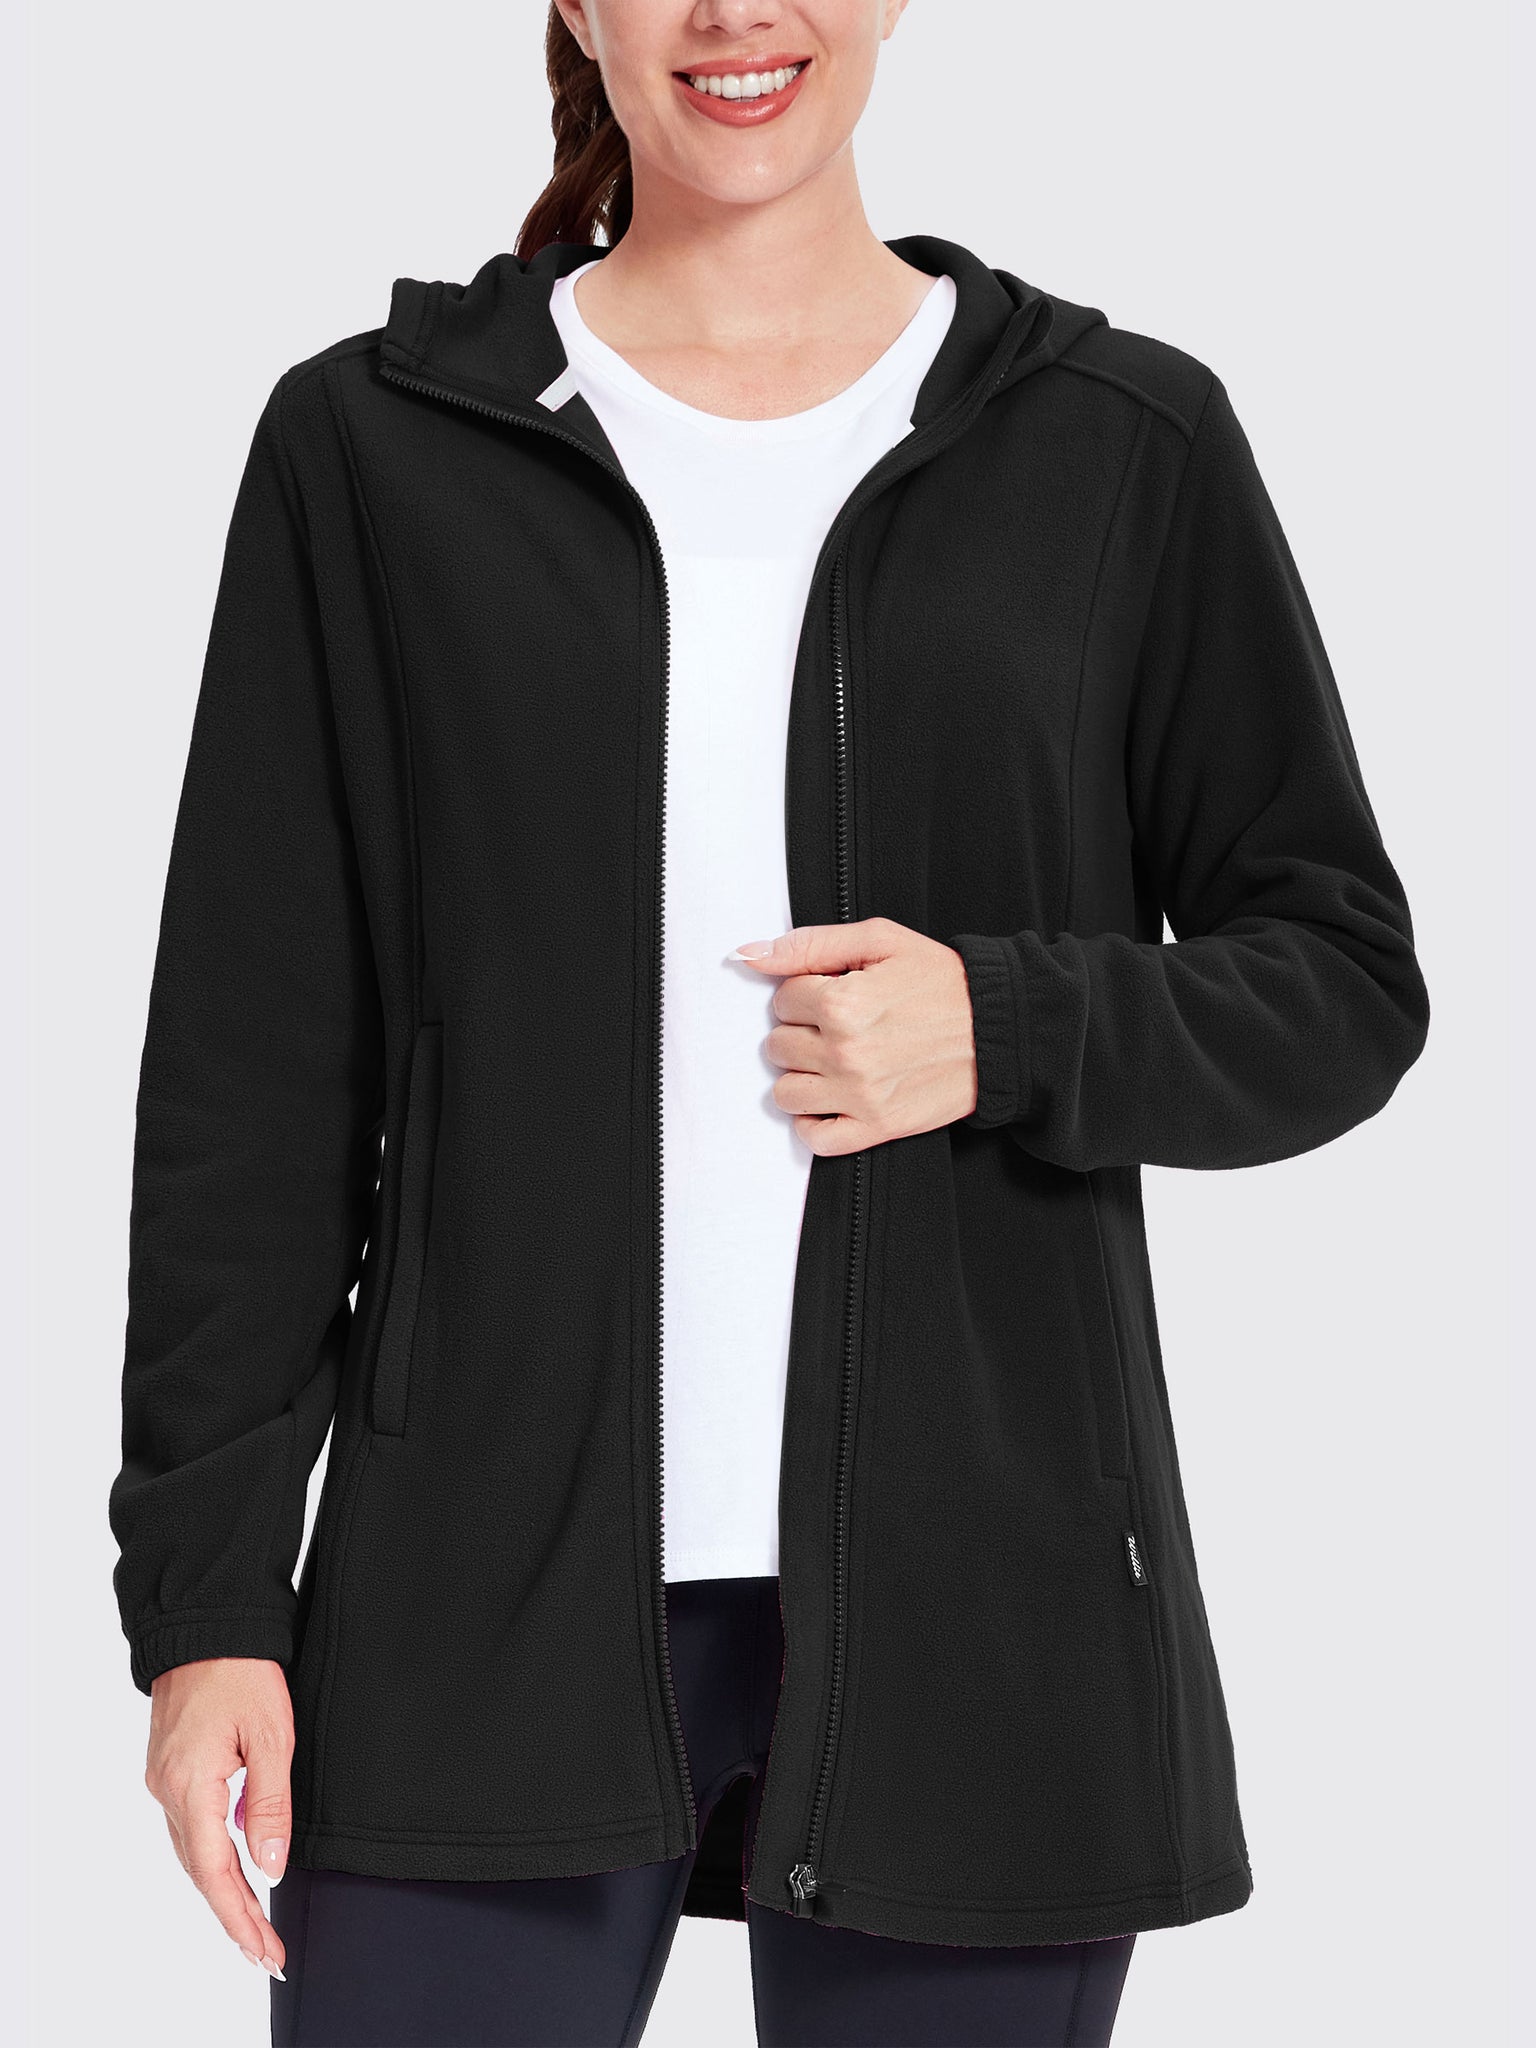 Women's Fleece Full-Zip Jacket Black2